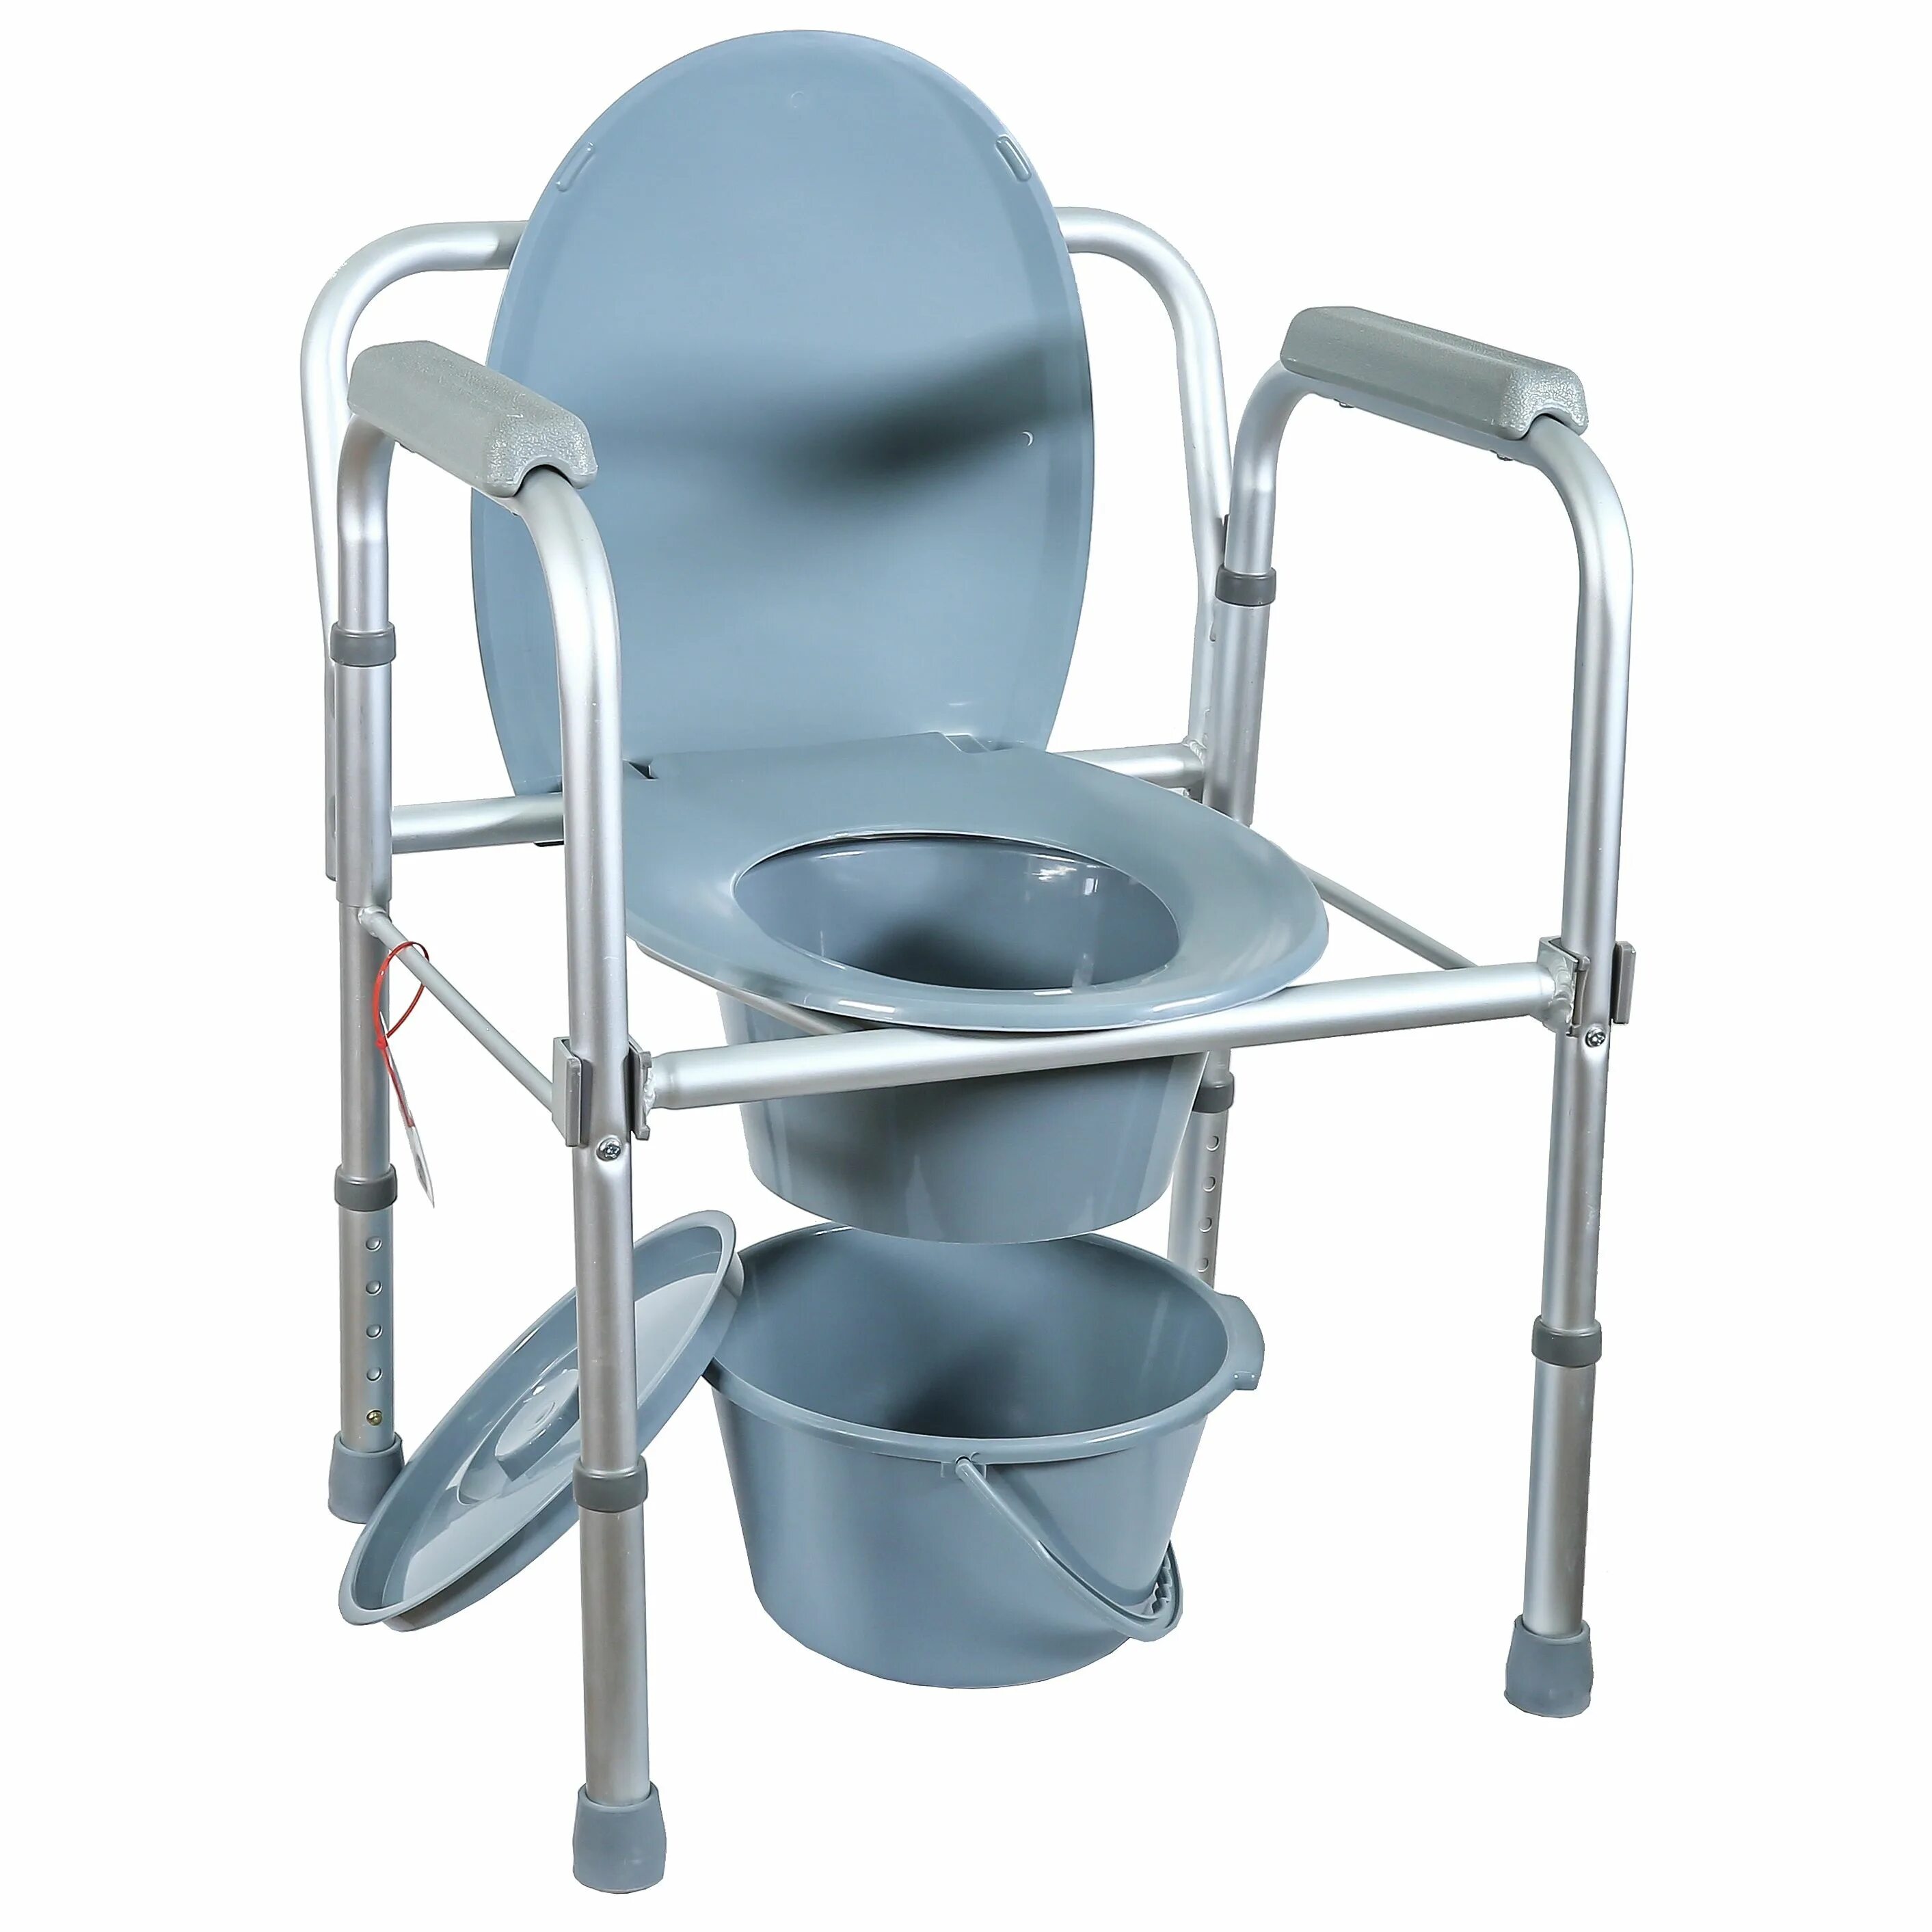 Купить туалетный стул. Кресло-туалет Amrus amcb6804. Кресло-туалет для инвалидов Amrus amcb6803. Кресло-туалет Amrus amcb6807. Кресло-туалет amcb6808.